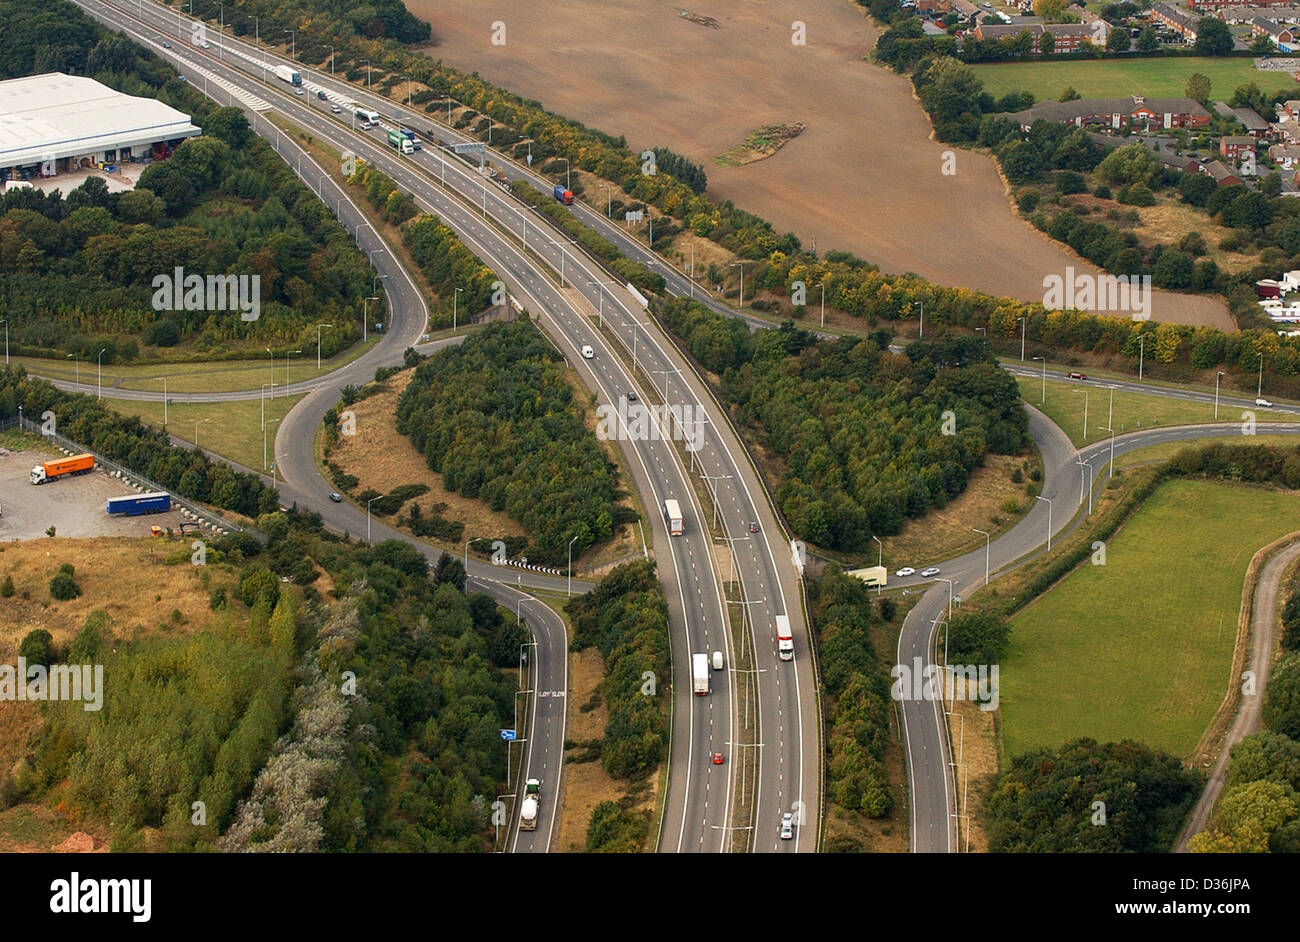 Luftaufnahme M54 Autobahn an der Kreuzung 1 Featherstone UK. Luftaufnahme Straßen Gebäude Autobahnen Großbritannien Britische Mautstelle Infrastruktur Autobahn Autobahnen Stockfoto